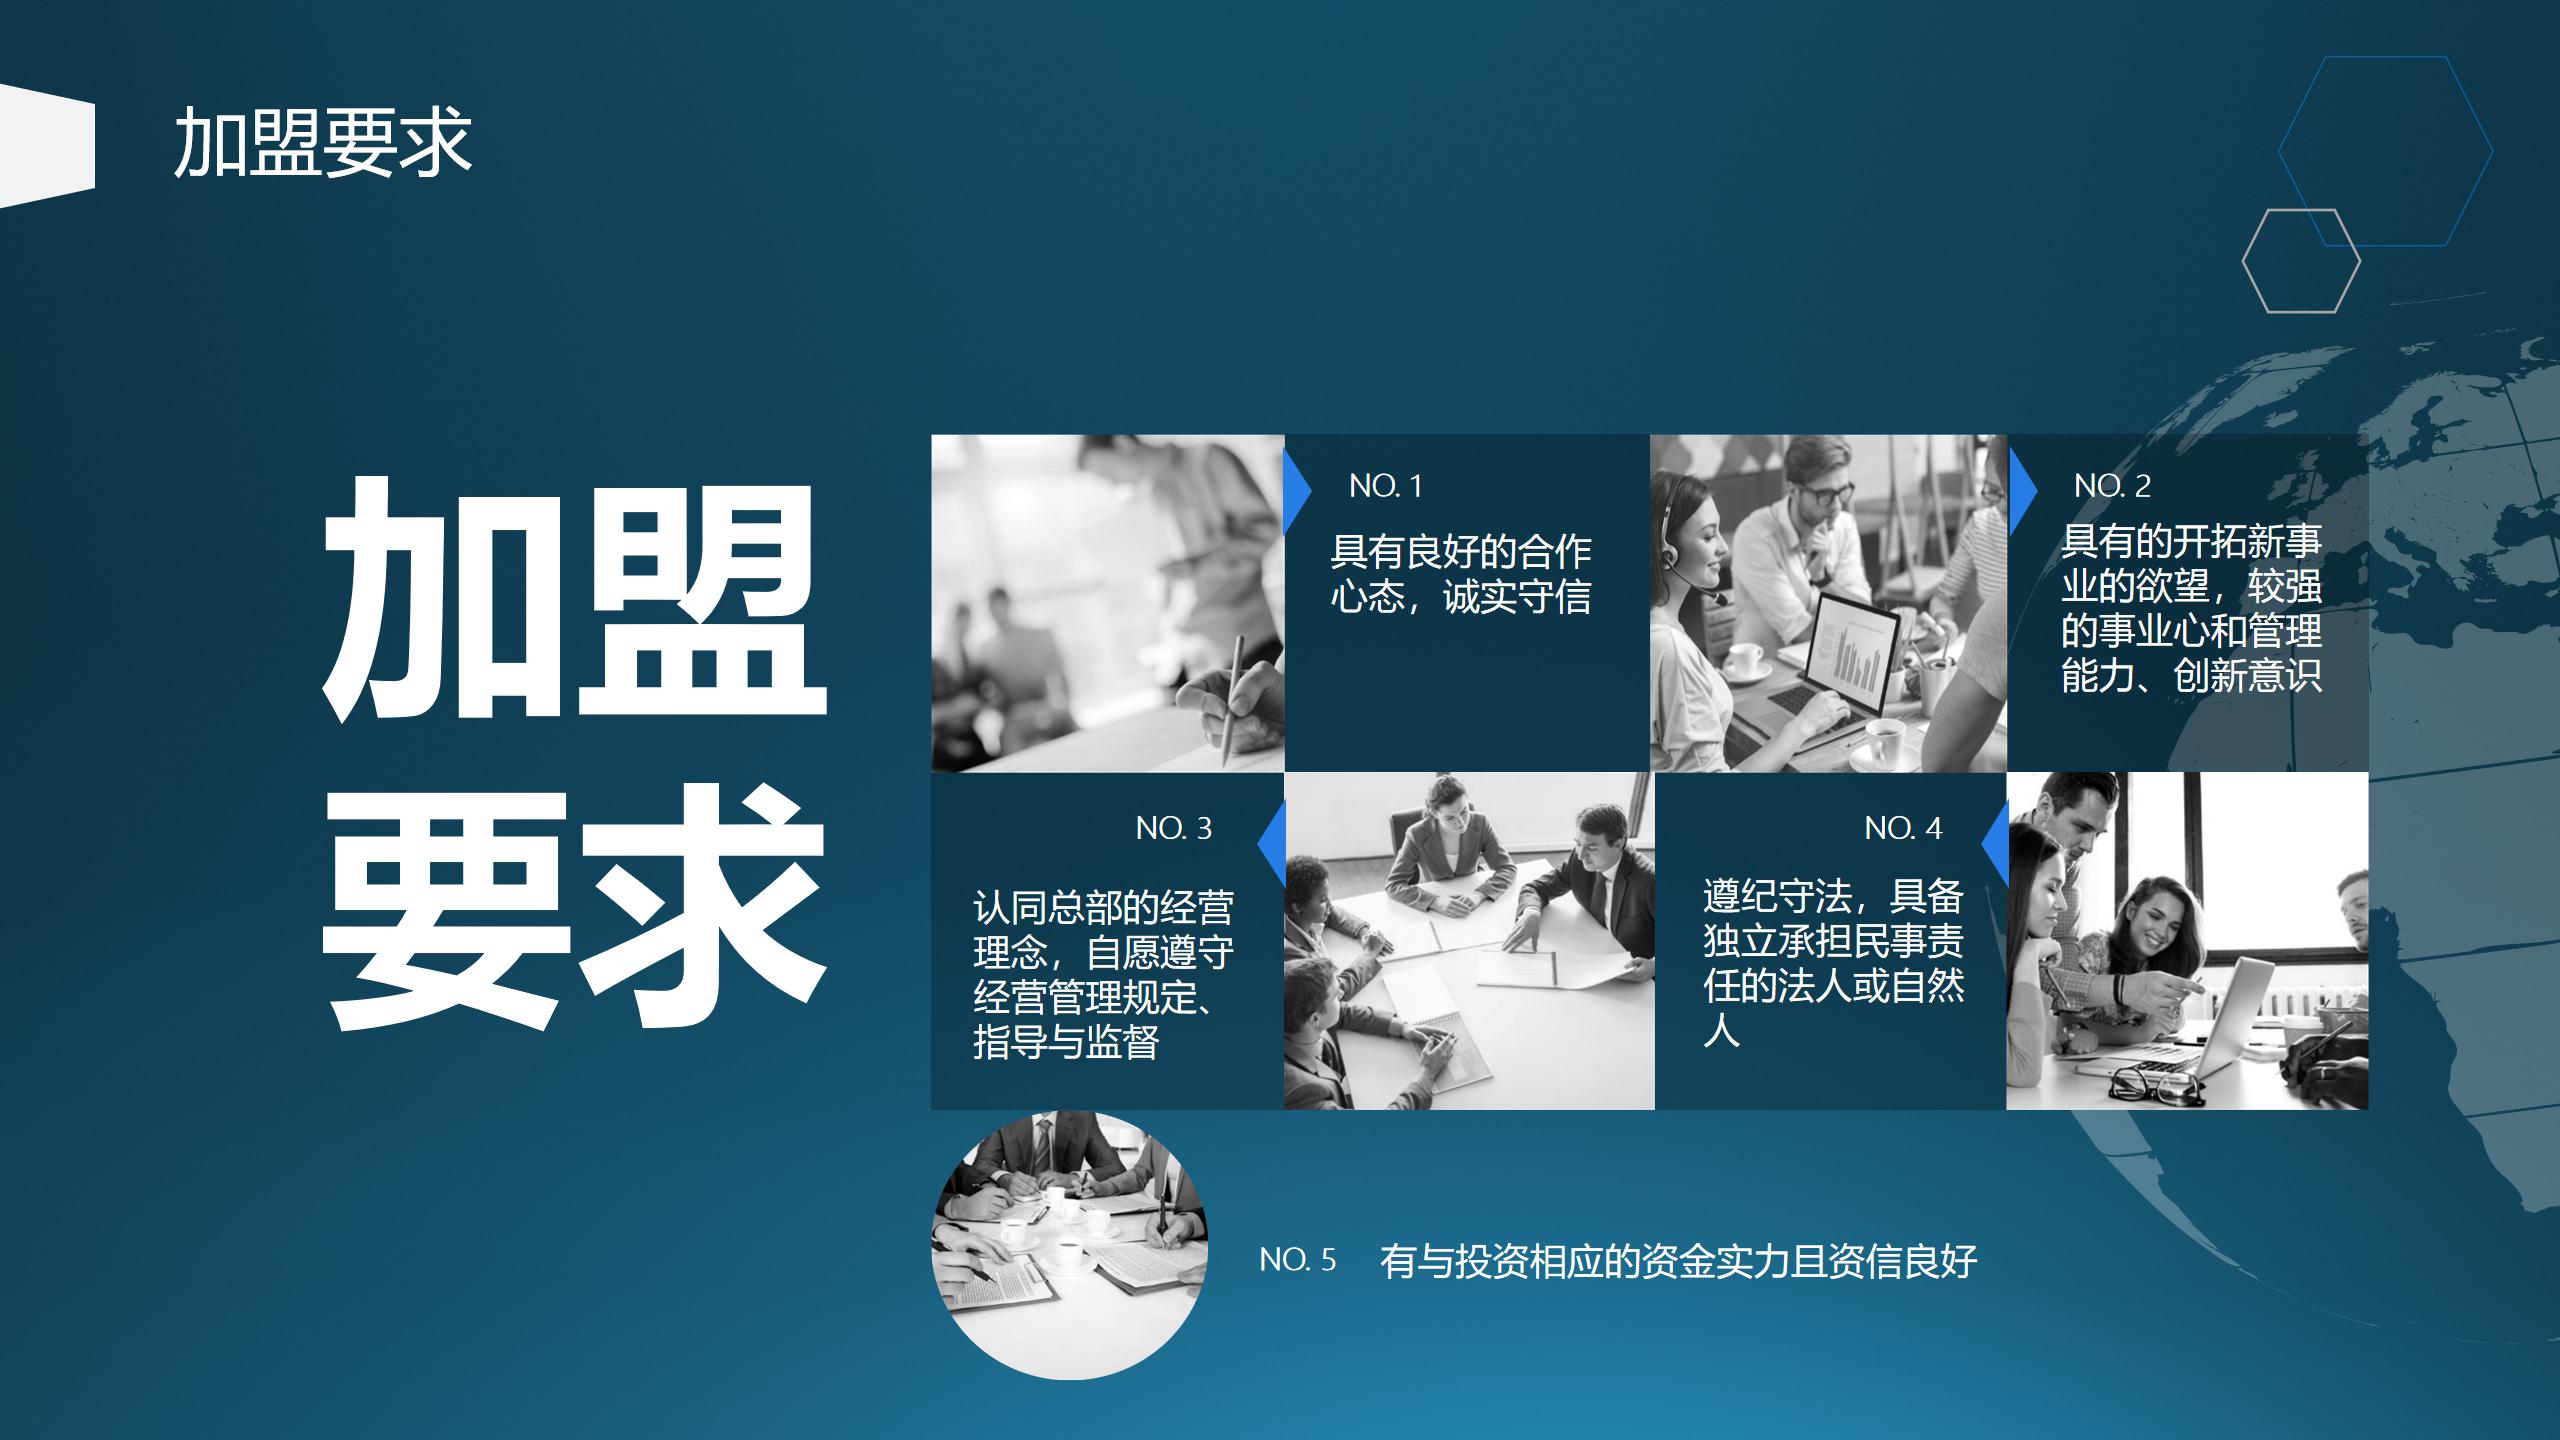 网站用上海博桥留学加盟说明 - 副本_12.jpg